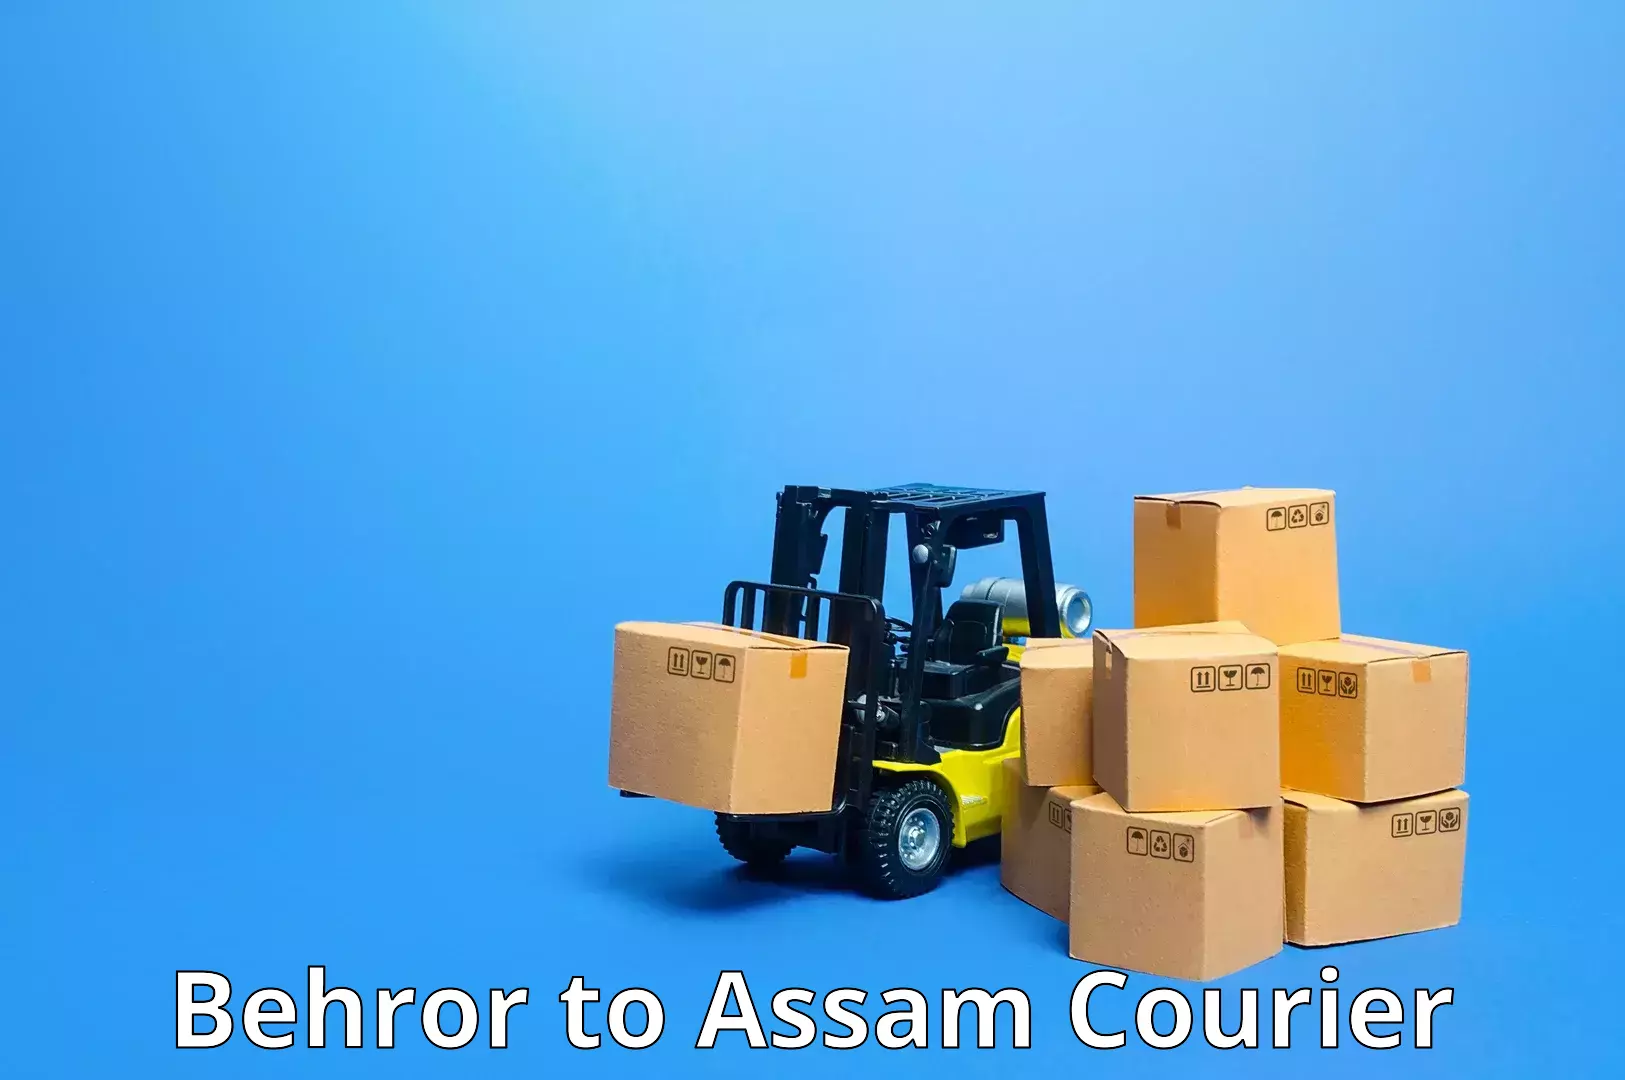 Express mail service Behror to Assam